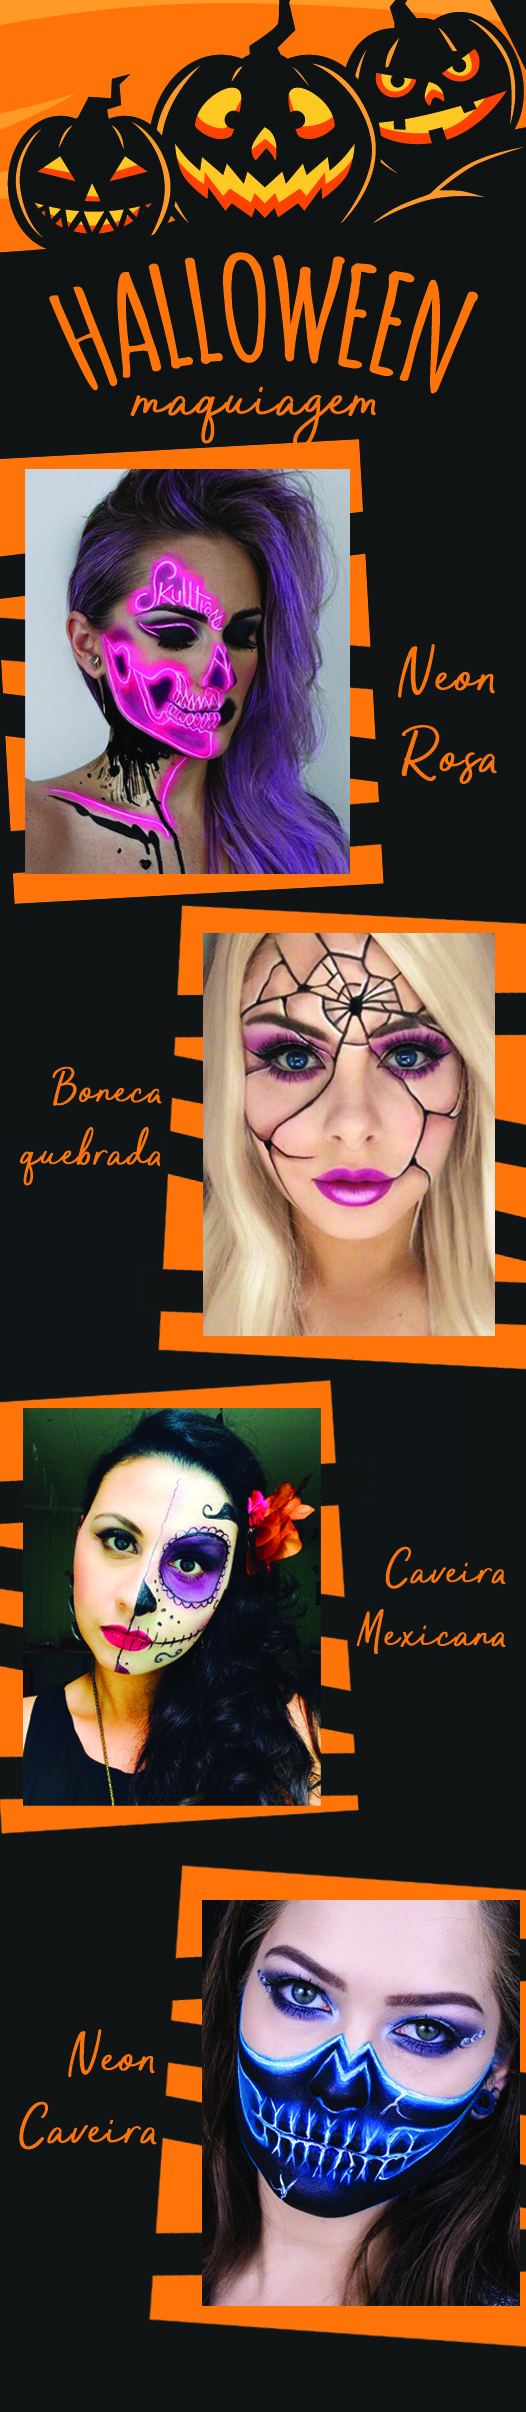 Maquiagens de Halloween para fazer bonito nas redes sociais